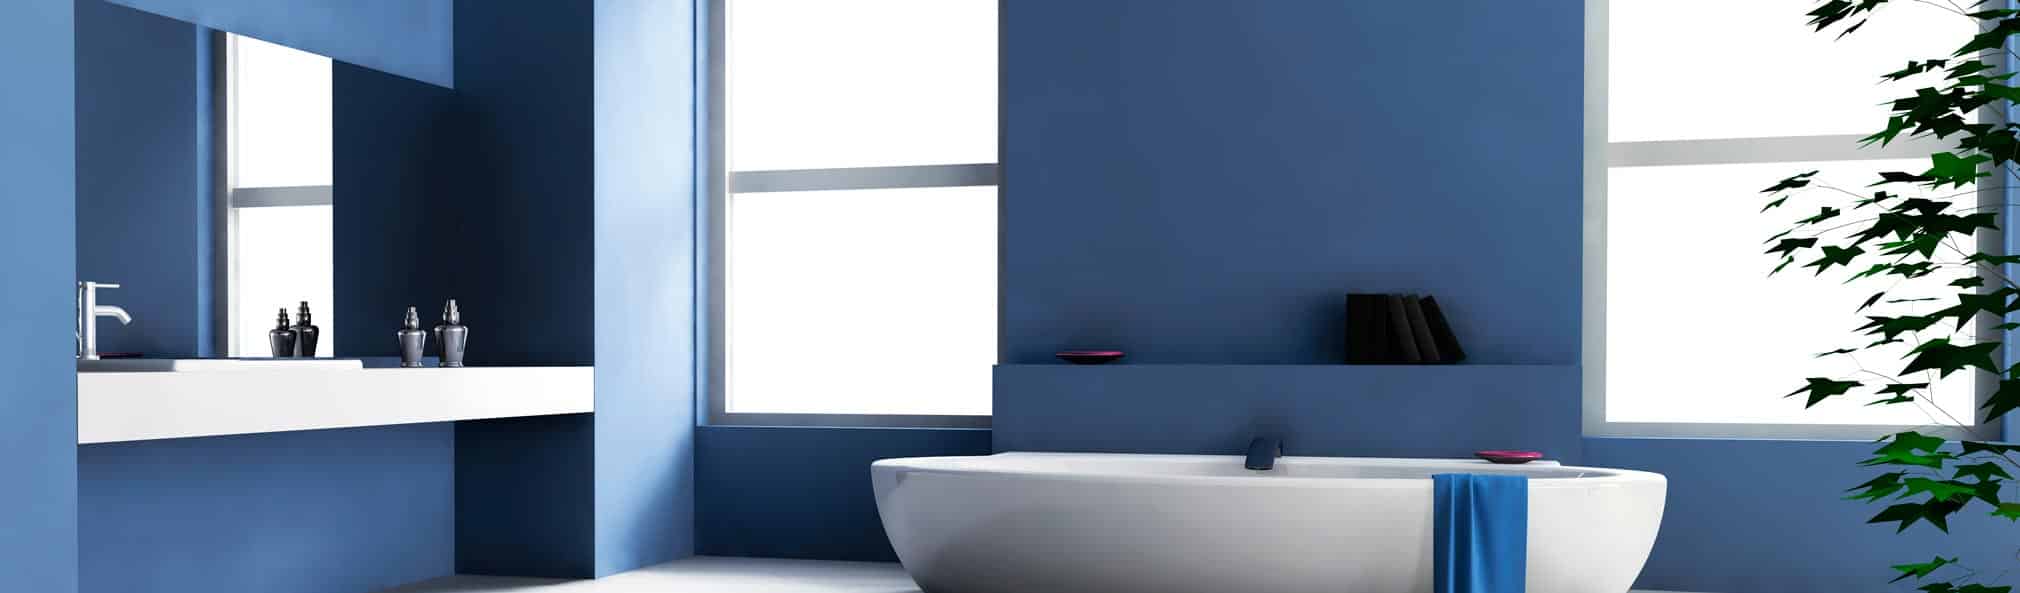 Remove A No Bathroom Light Fixture, How To Remove Light Fixture From Bathroom Wall